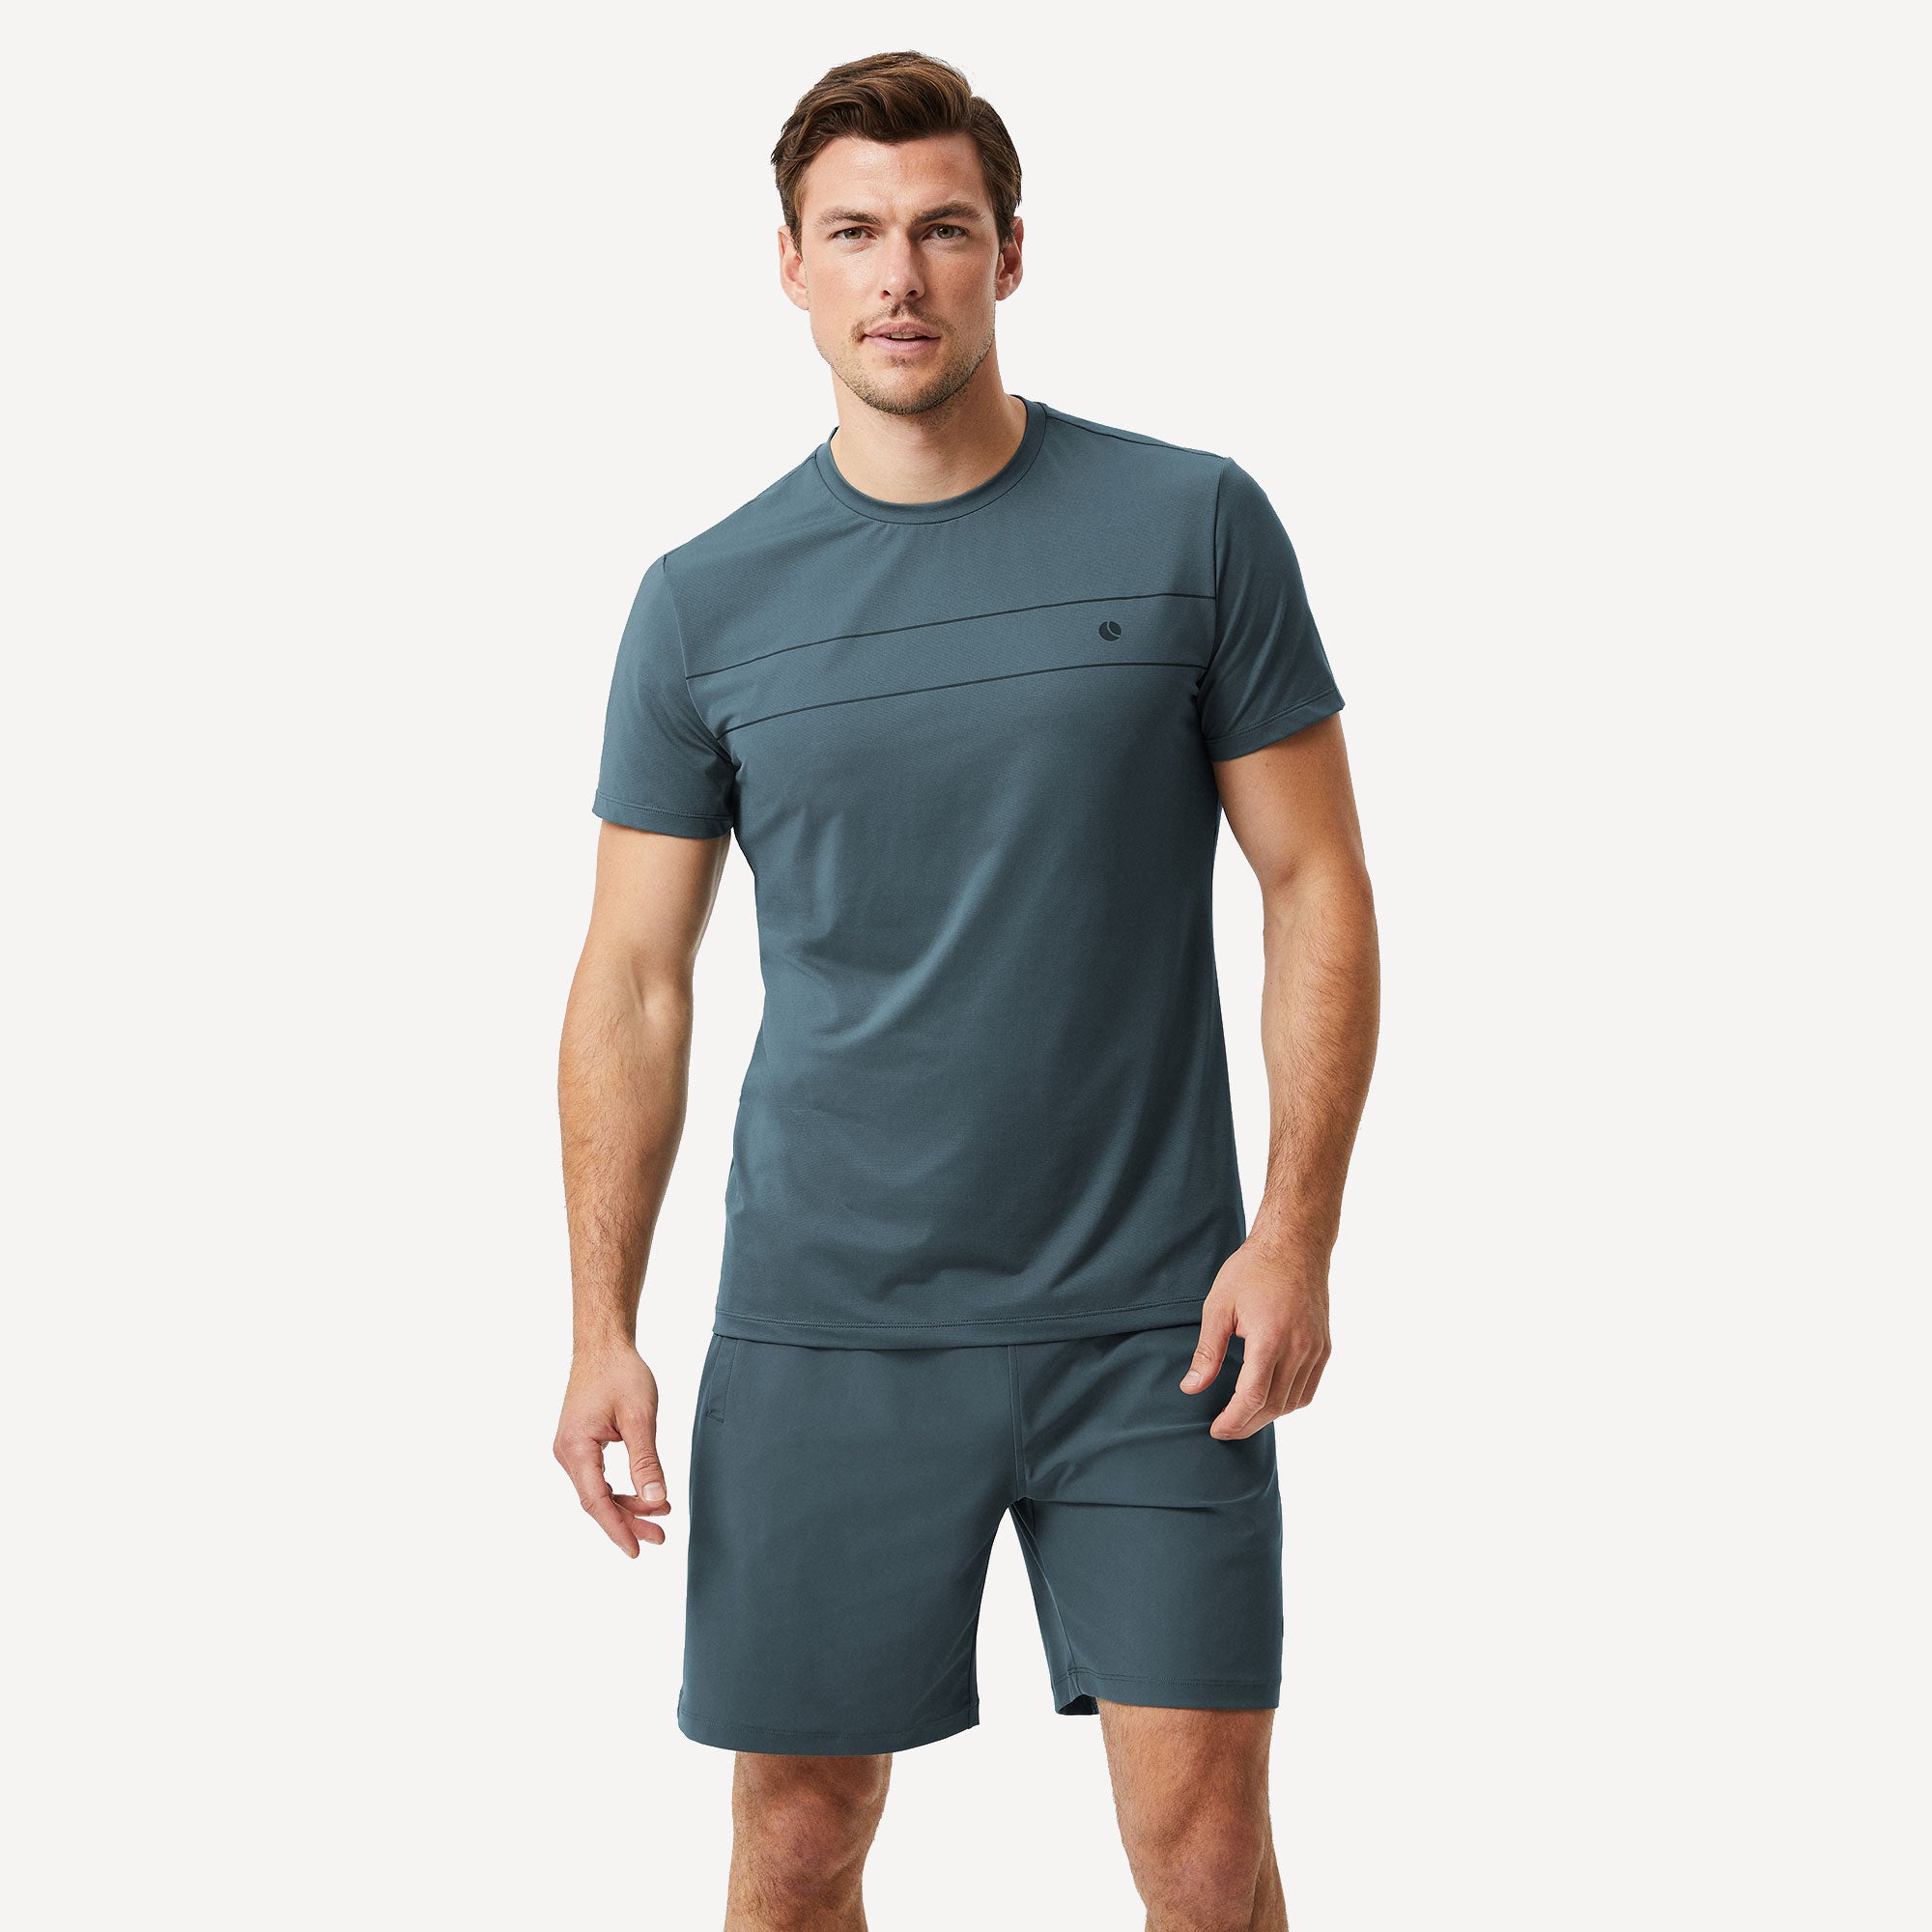 Björn Borg Ace Men's Light Tennis Shirt - Green (1)